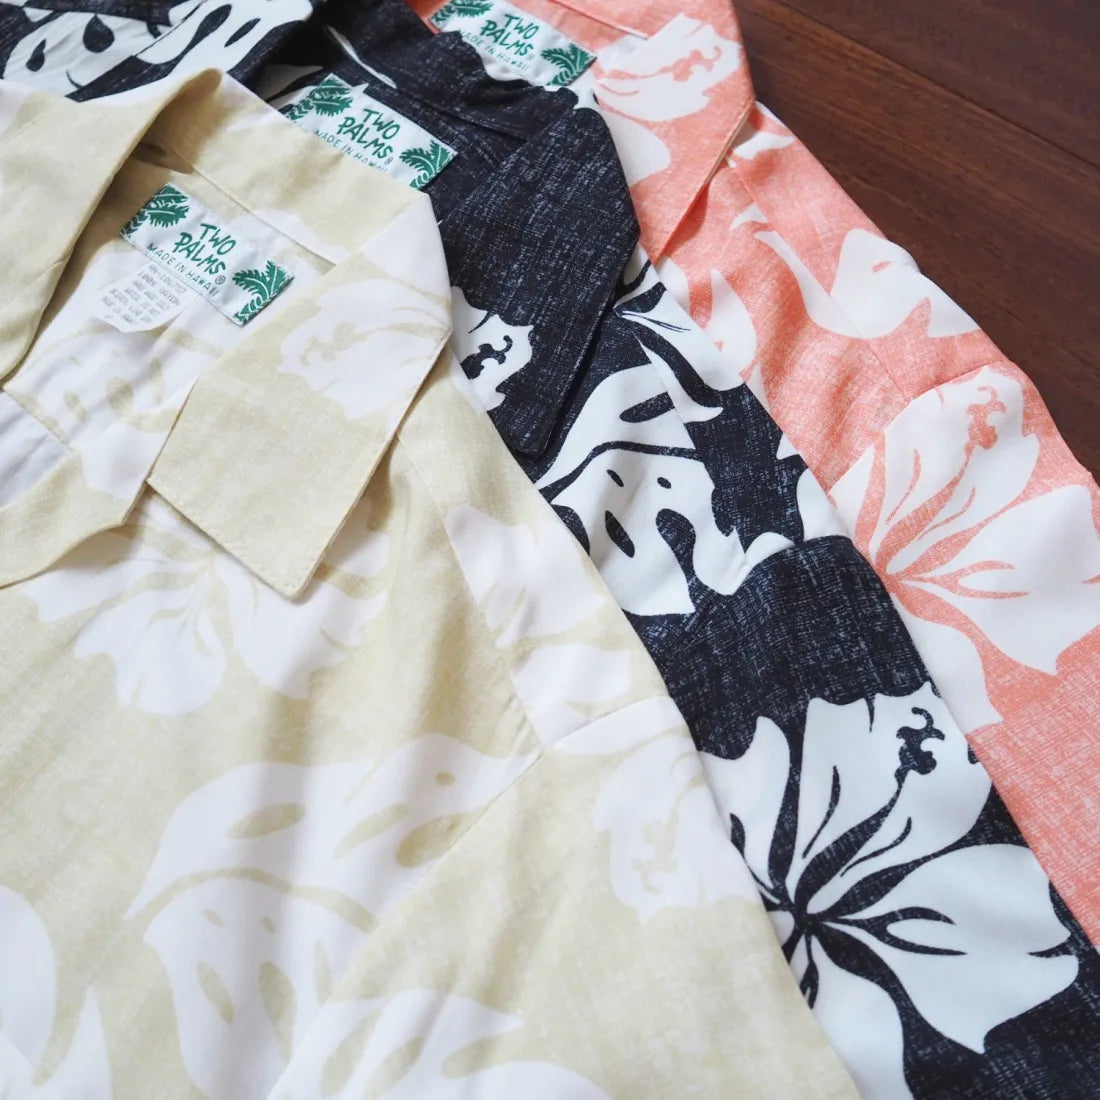 Tradewinds Black Hawaiian Rayon Shirt - Made In Hawaii